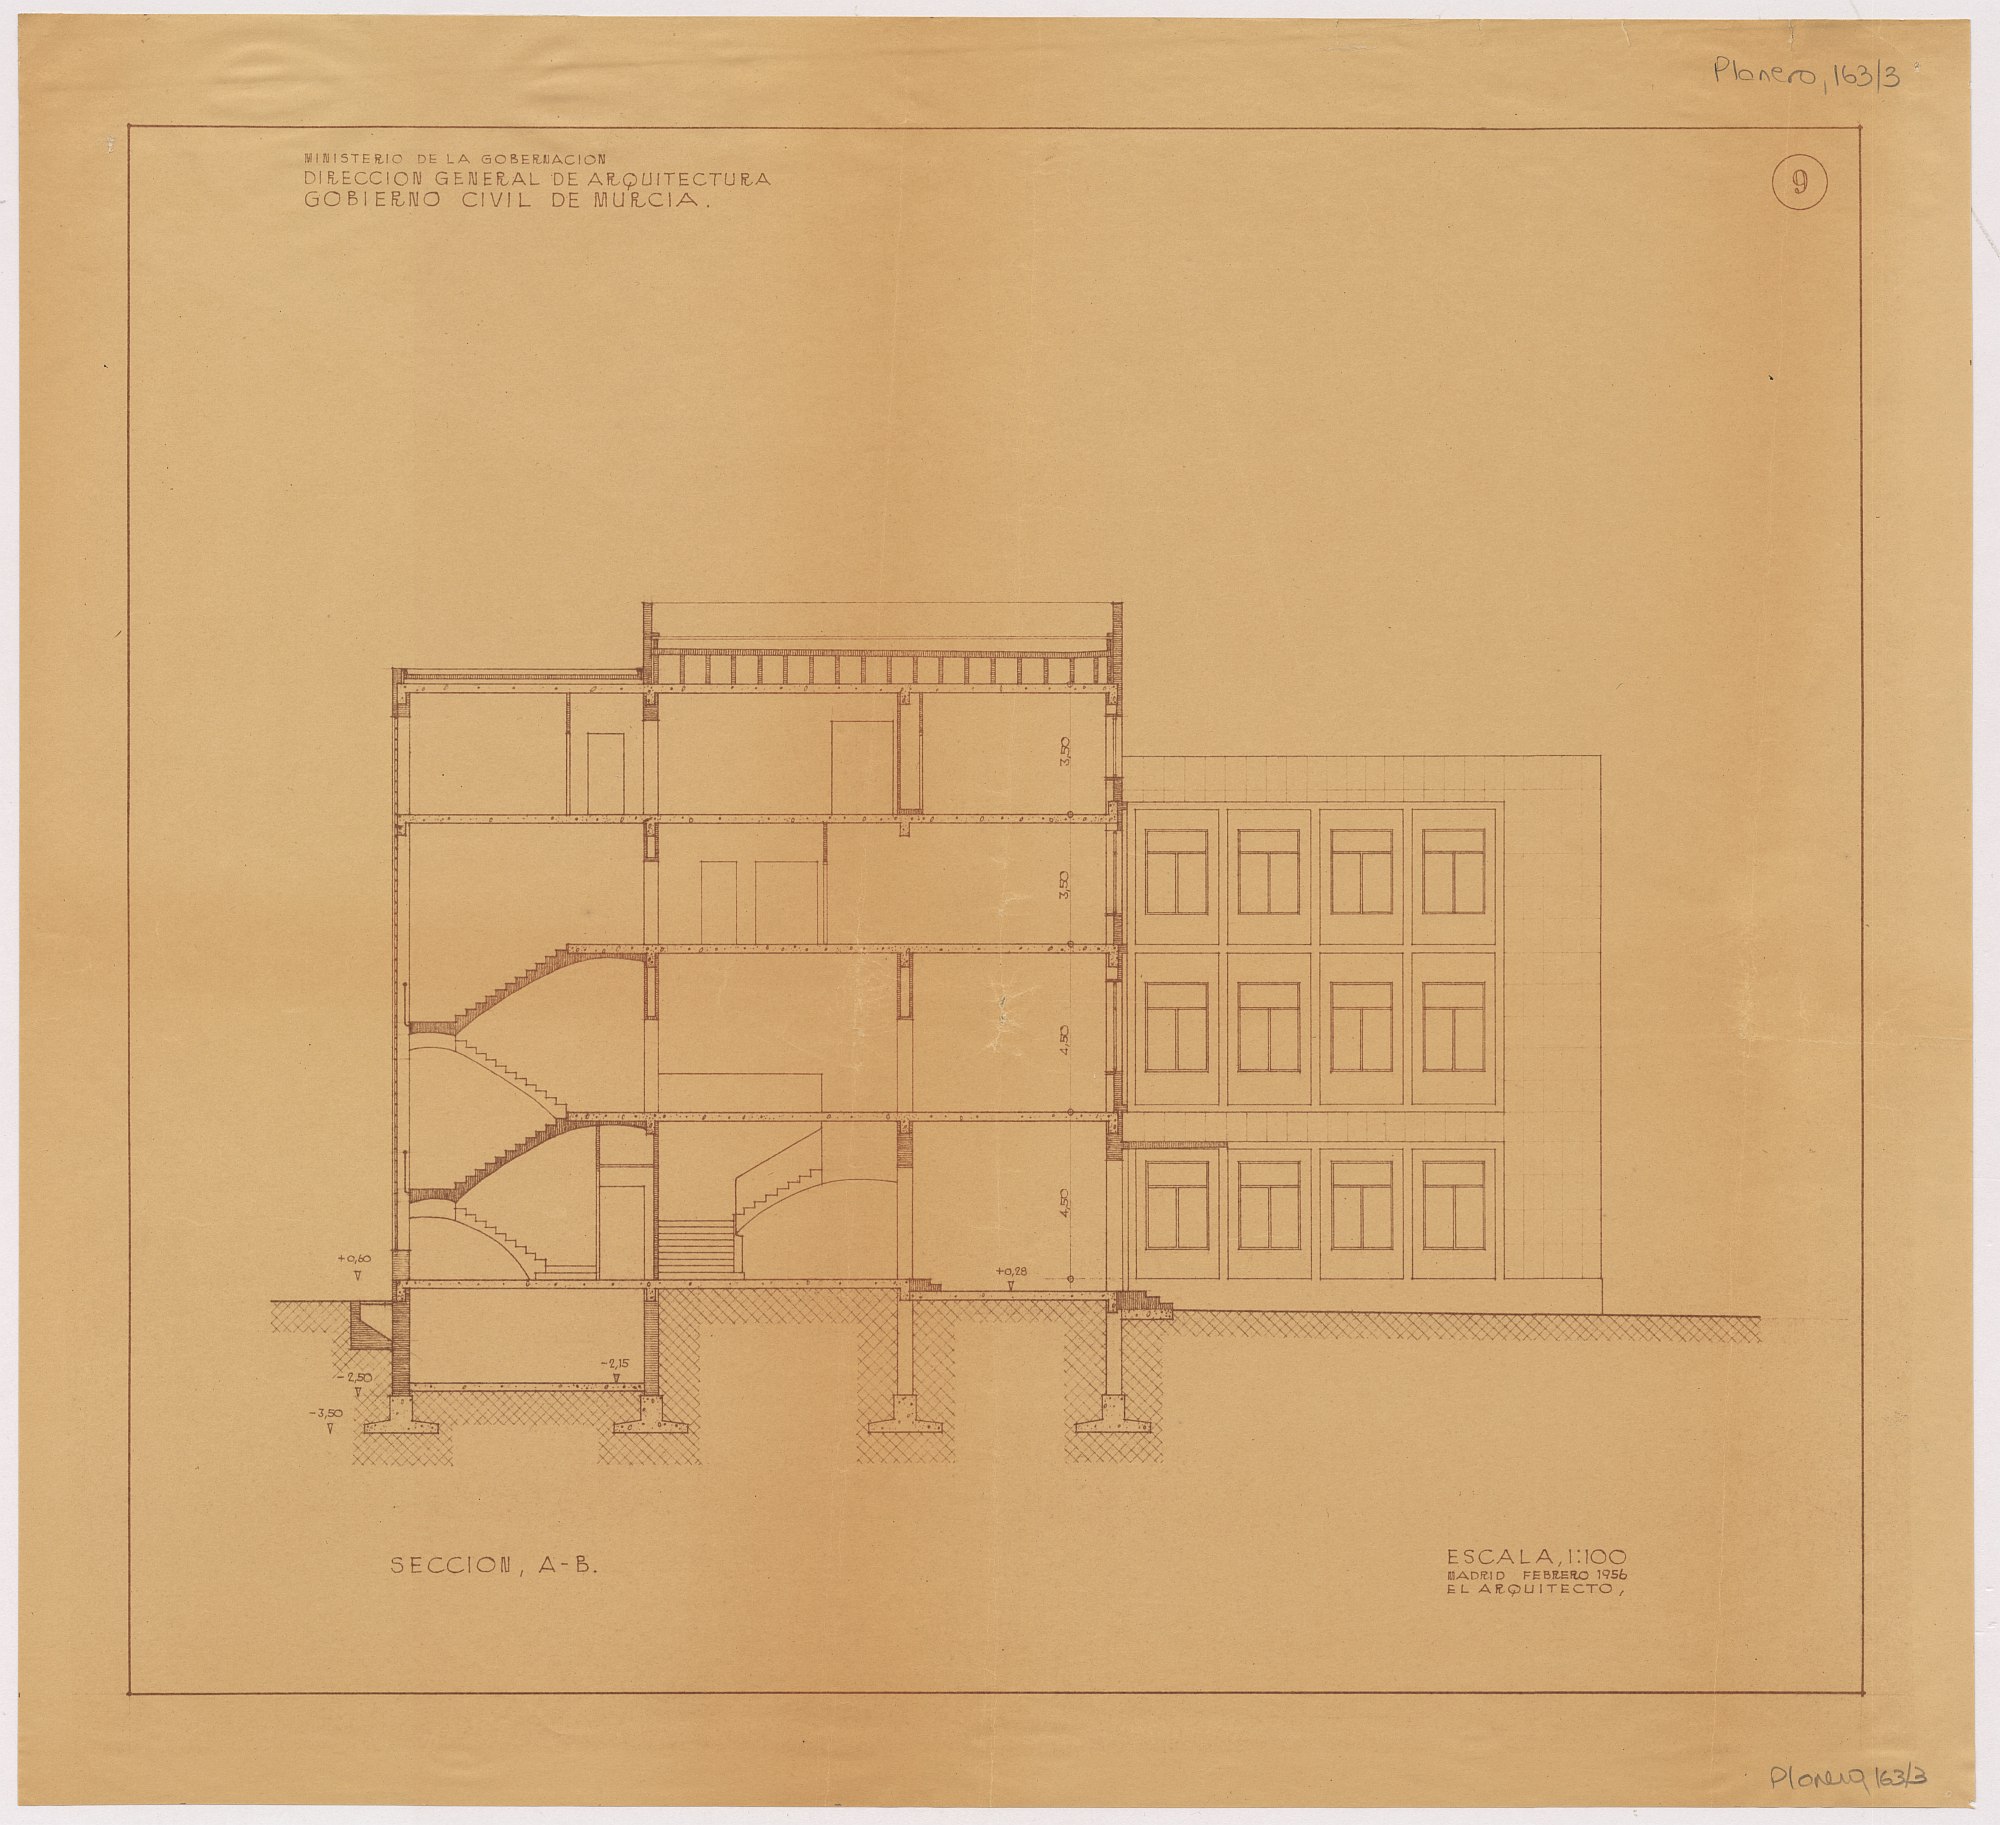 Plano de la sección A-B del edificio del Gobierno Civil de Murcia.